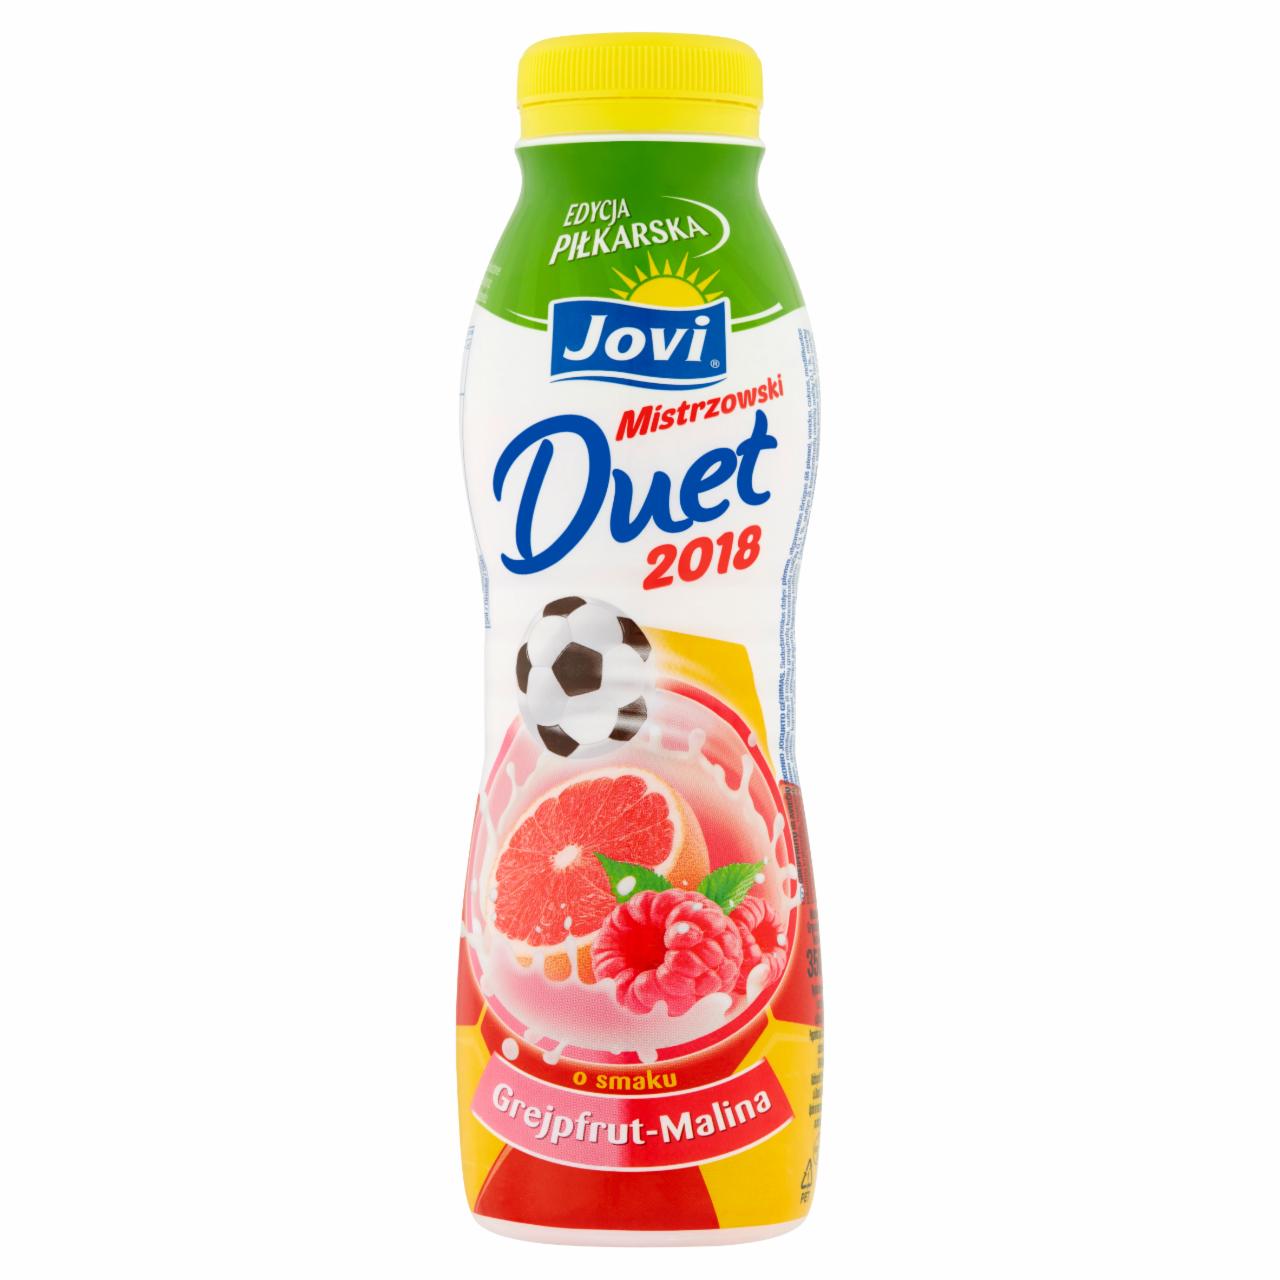 Zdjęcia - Jovi Mistrzowski Duet 2018 Napój jogurtowy o smaku grejpfrut-malina 350 g